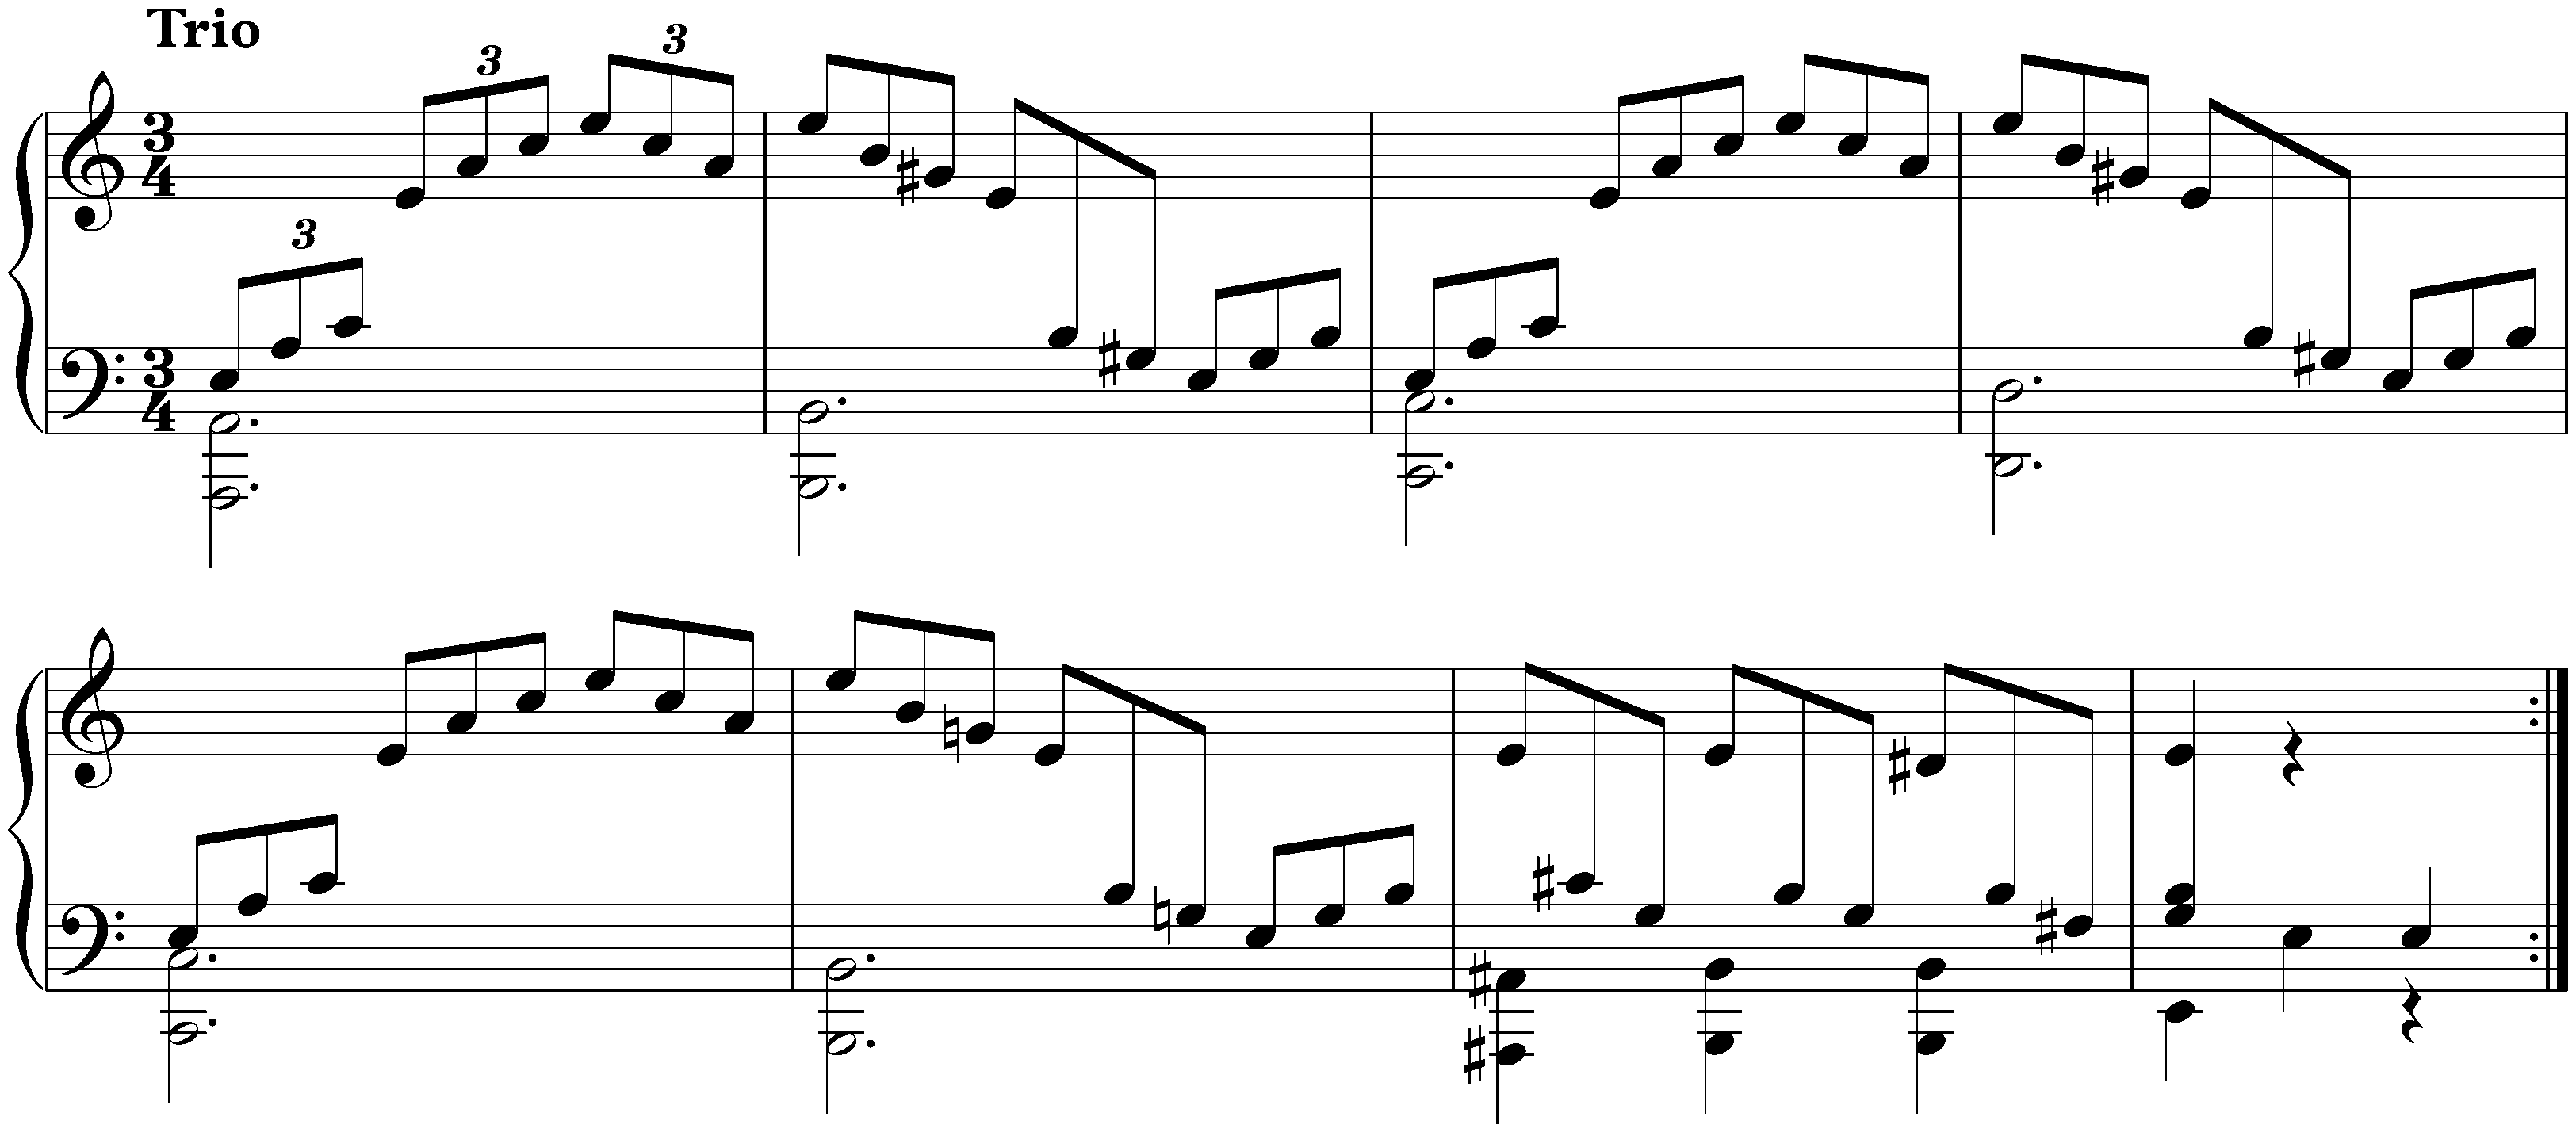 Sonata no. 3 in C major, op. 2 no. 3; 3. Scherzo: Allegro